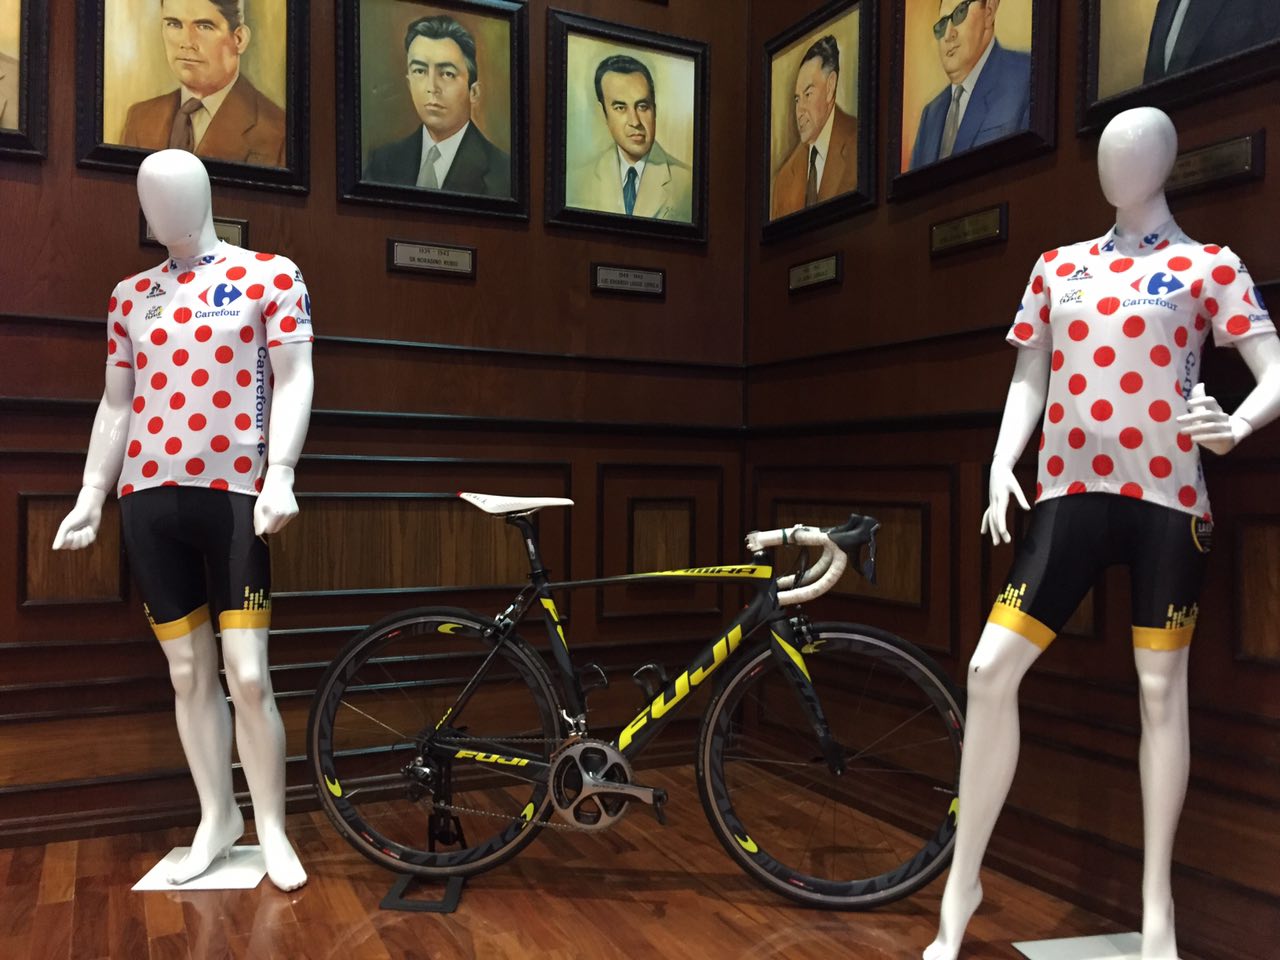  ¡Querétaro tendrá su propia etapa de la Carrera Ciclista “by Le Tour de France” el próximo 26 de noviembre!